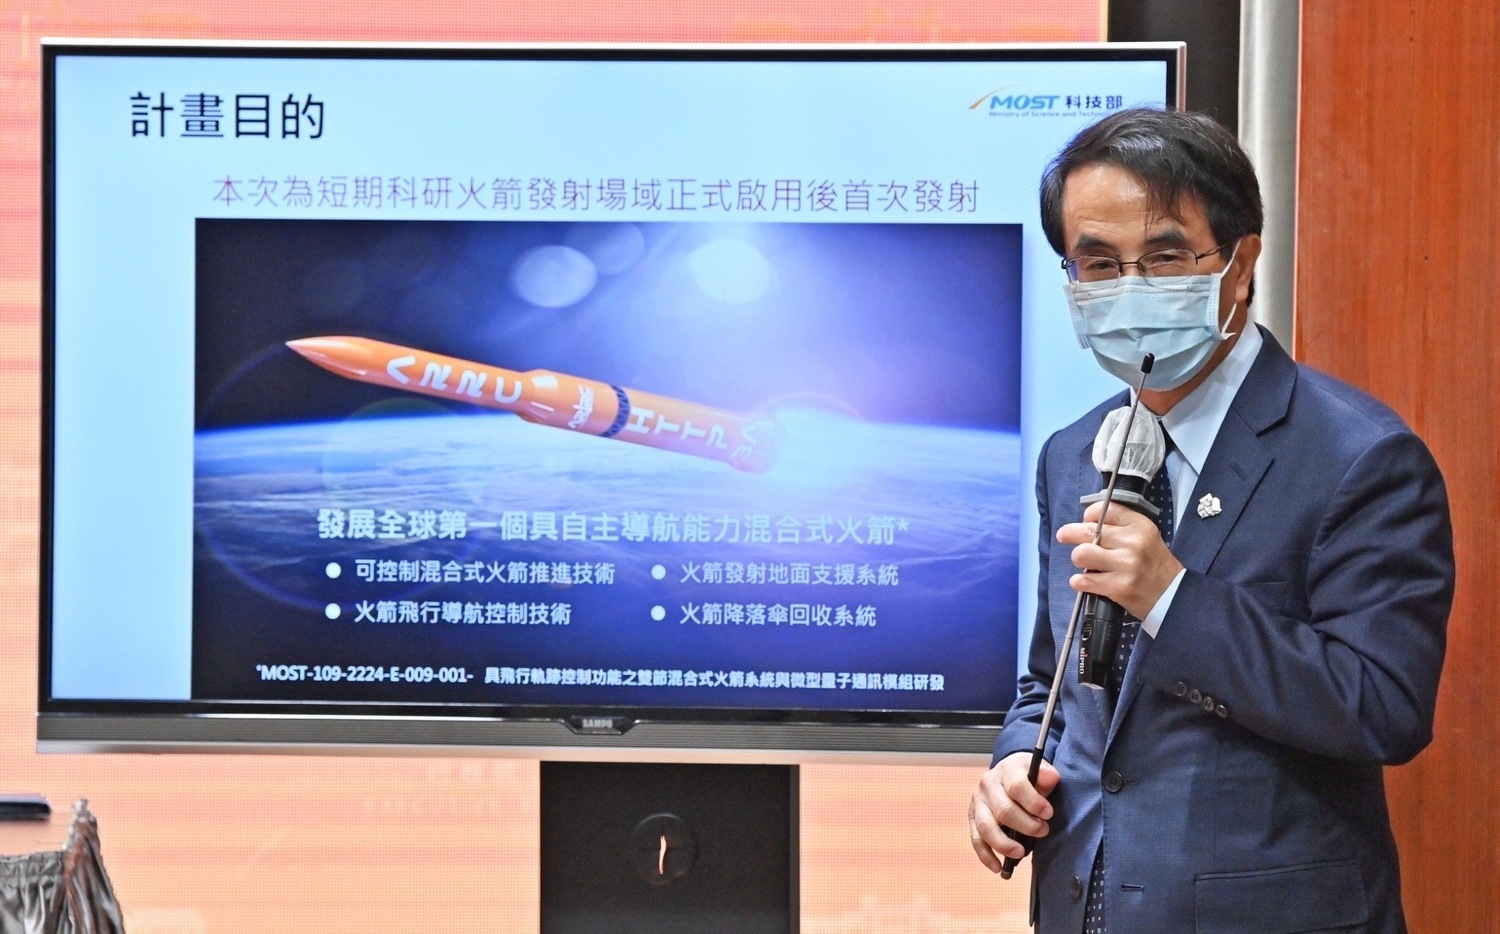 旭海火箭發射成功 蘇揆：早日實現「把台灣的國力打上太空」的願景 | 科技